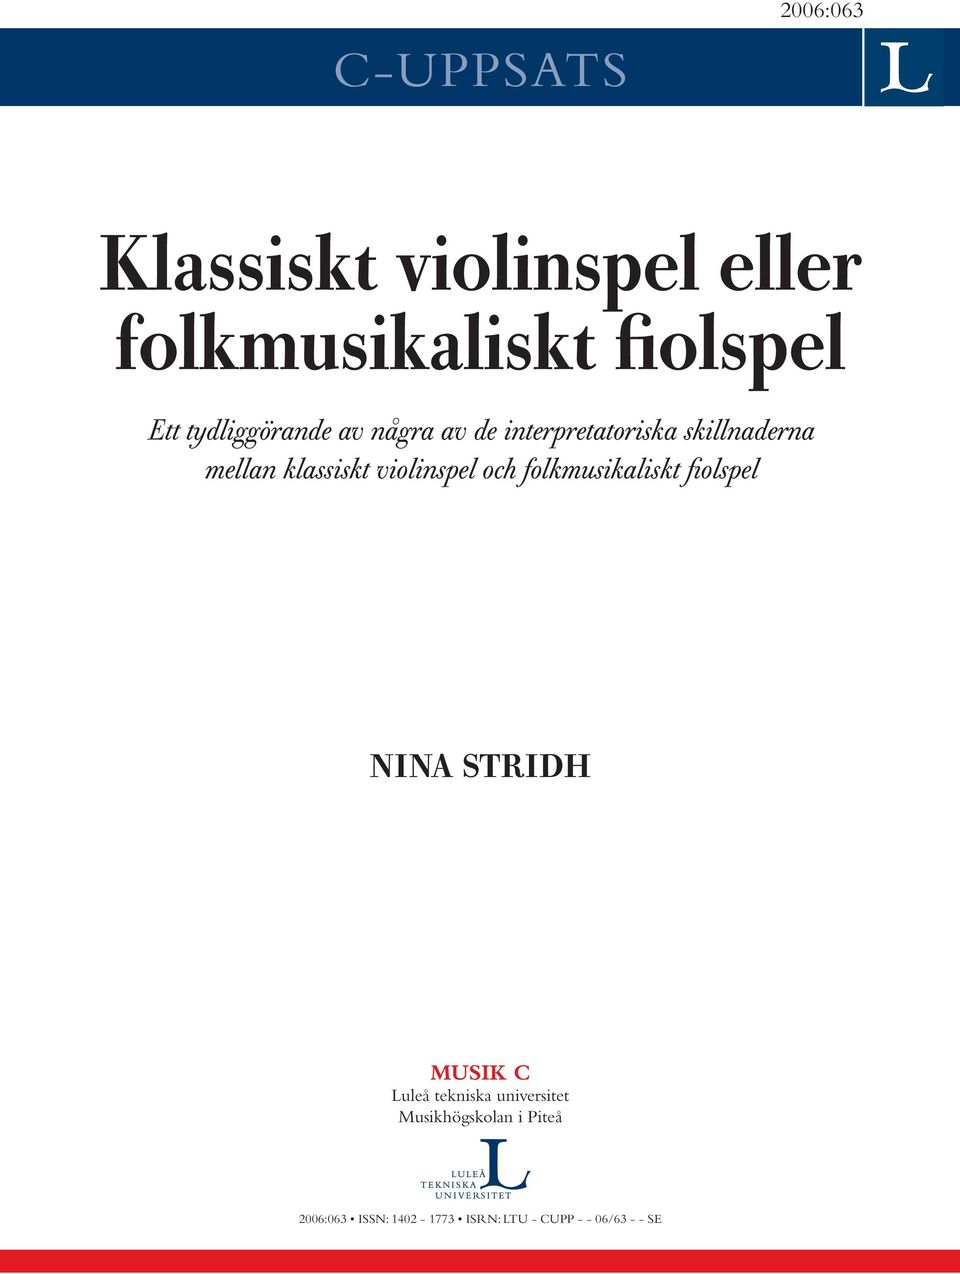 violinspel och folkmusikaliskt fiolspel NINA STRIDH MUSIK C Luleå tekniska